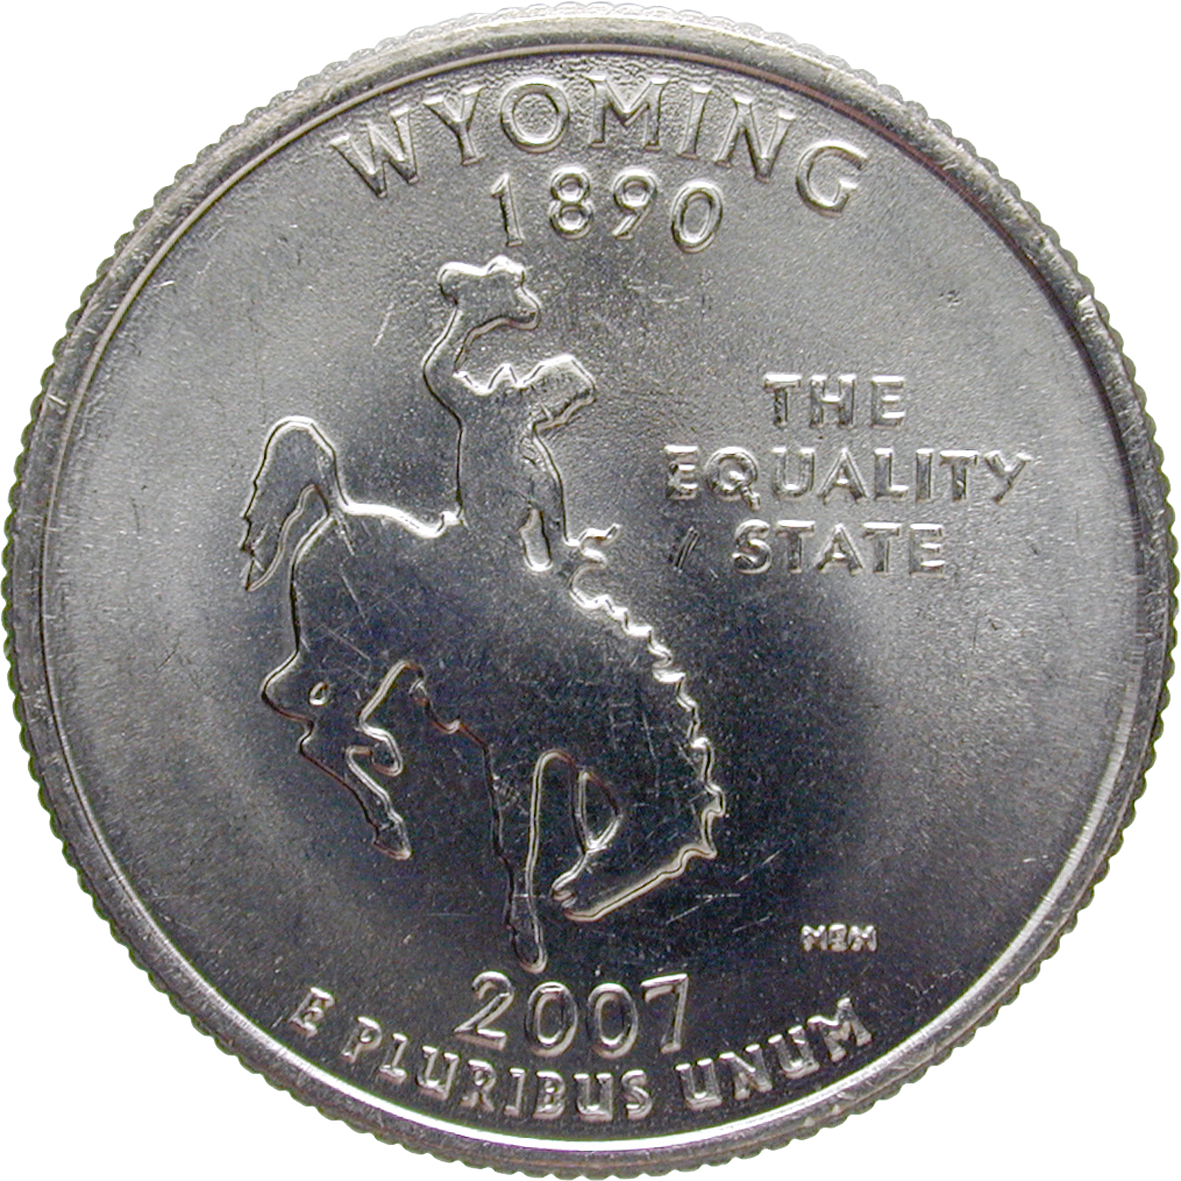 Vereinigte Staaten von Amerika, Quarter Dollar 2007 (reverse)